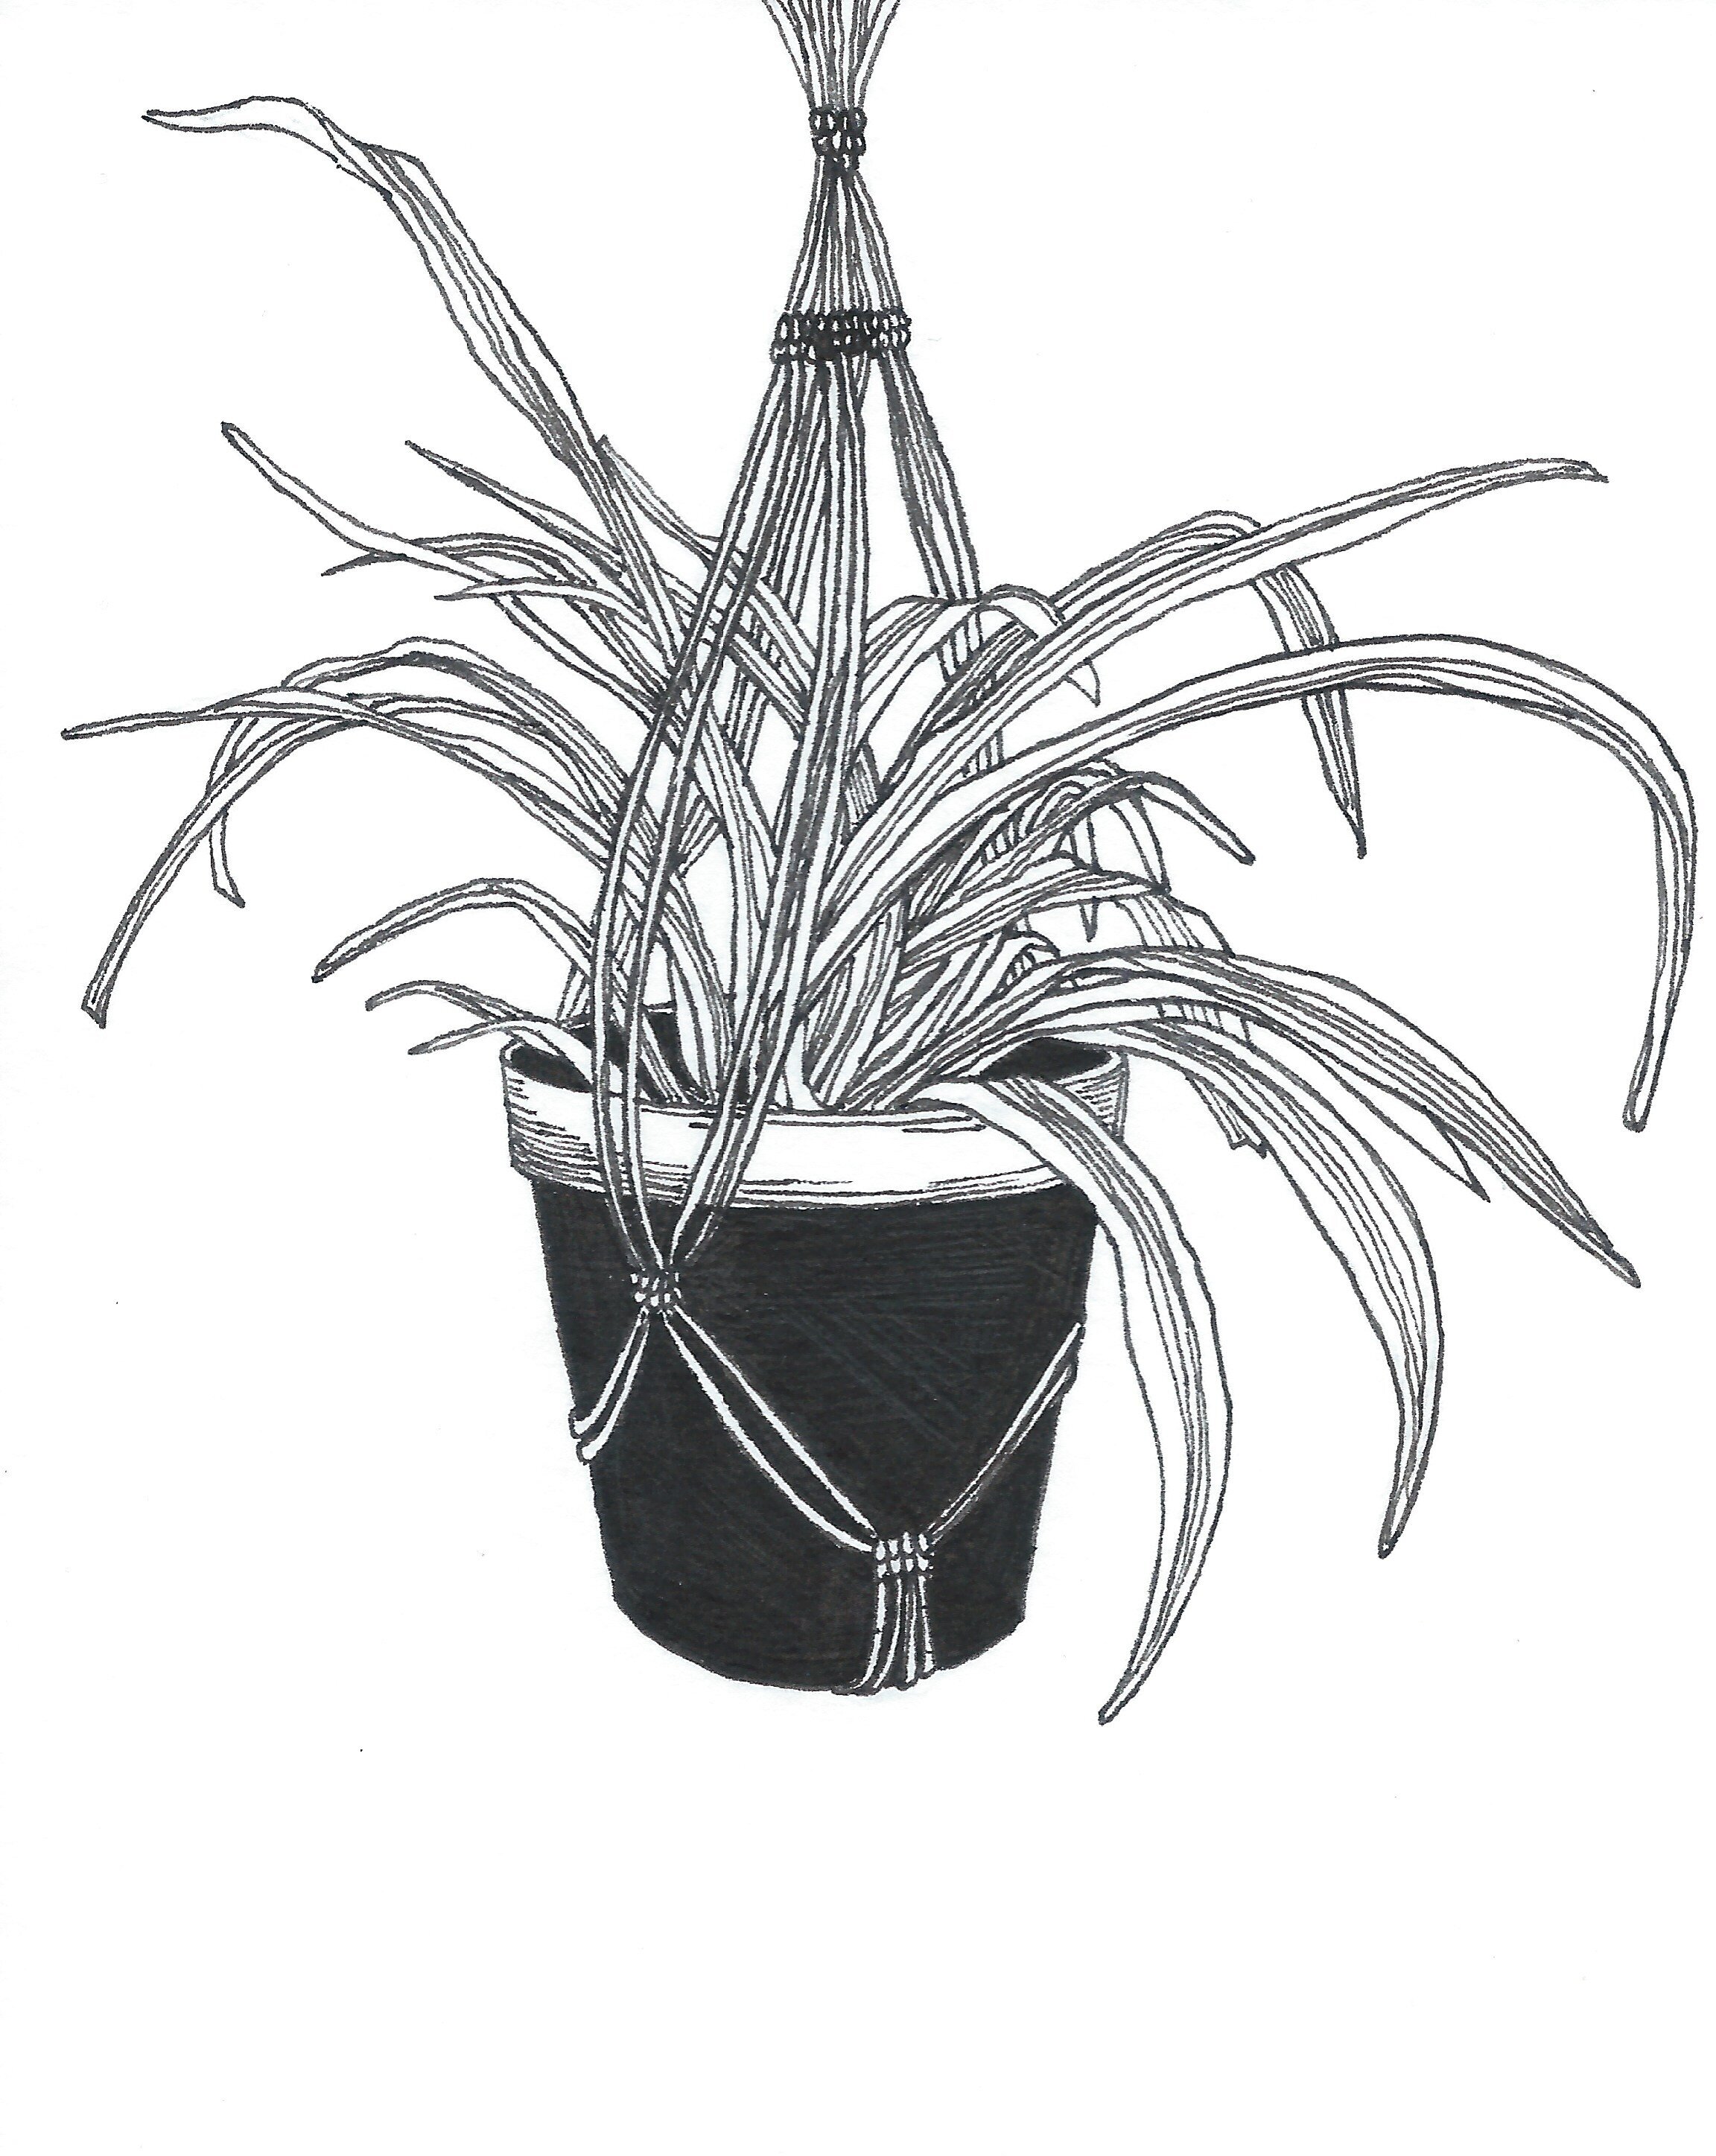   Chlorophytum comosum (Spider plant) , Ink Pen on Paper, 4 x 5”, 2019 